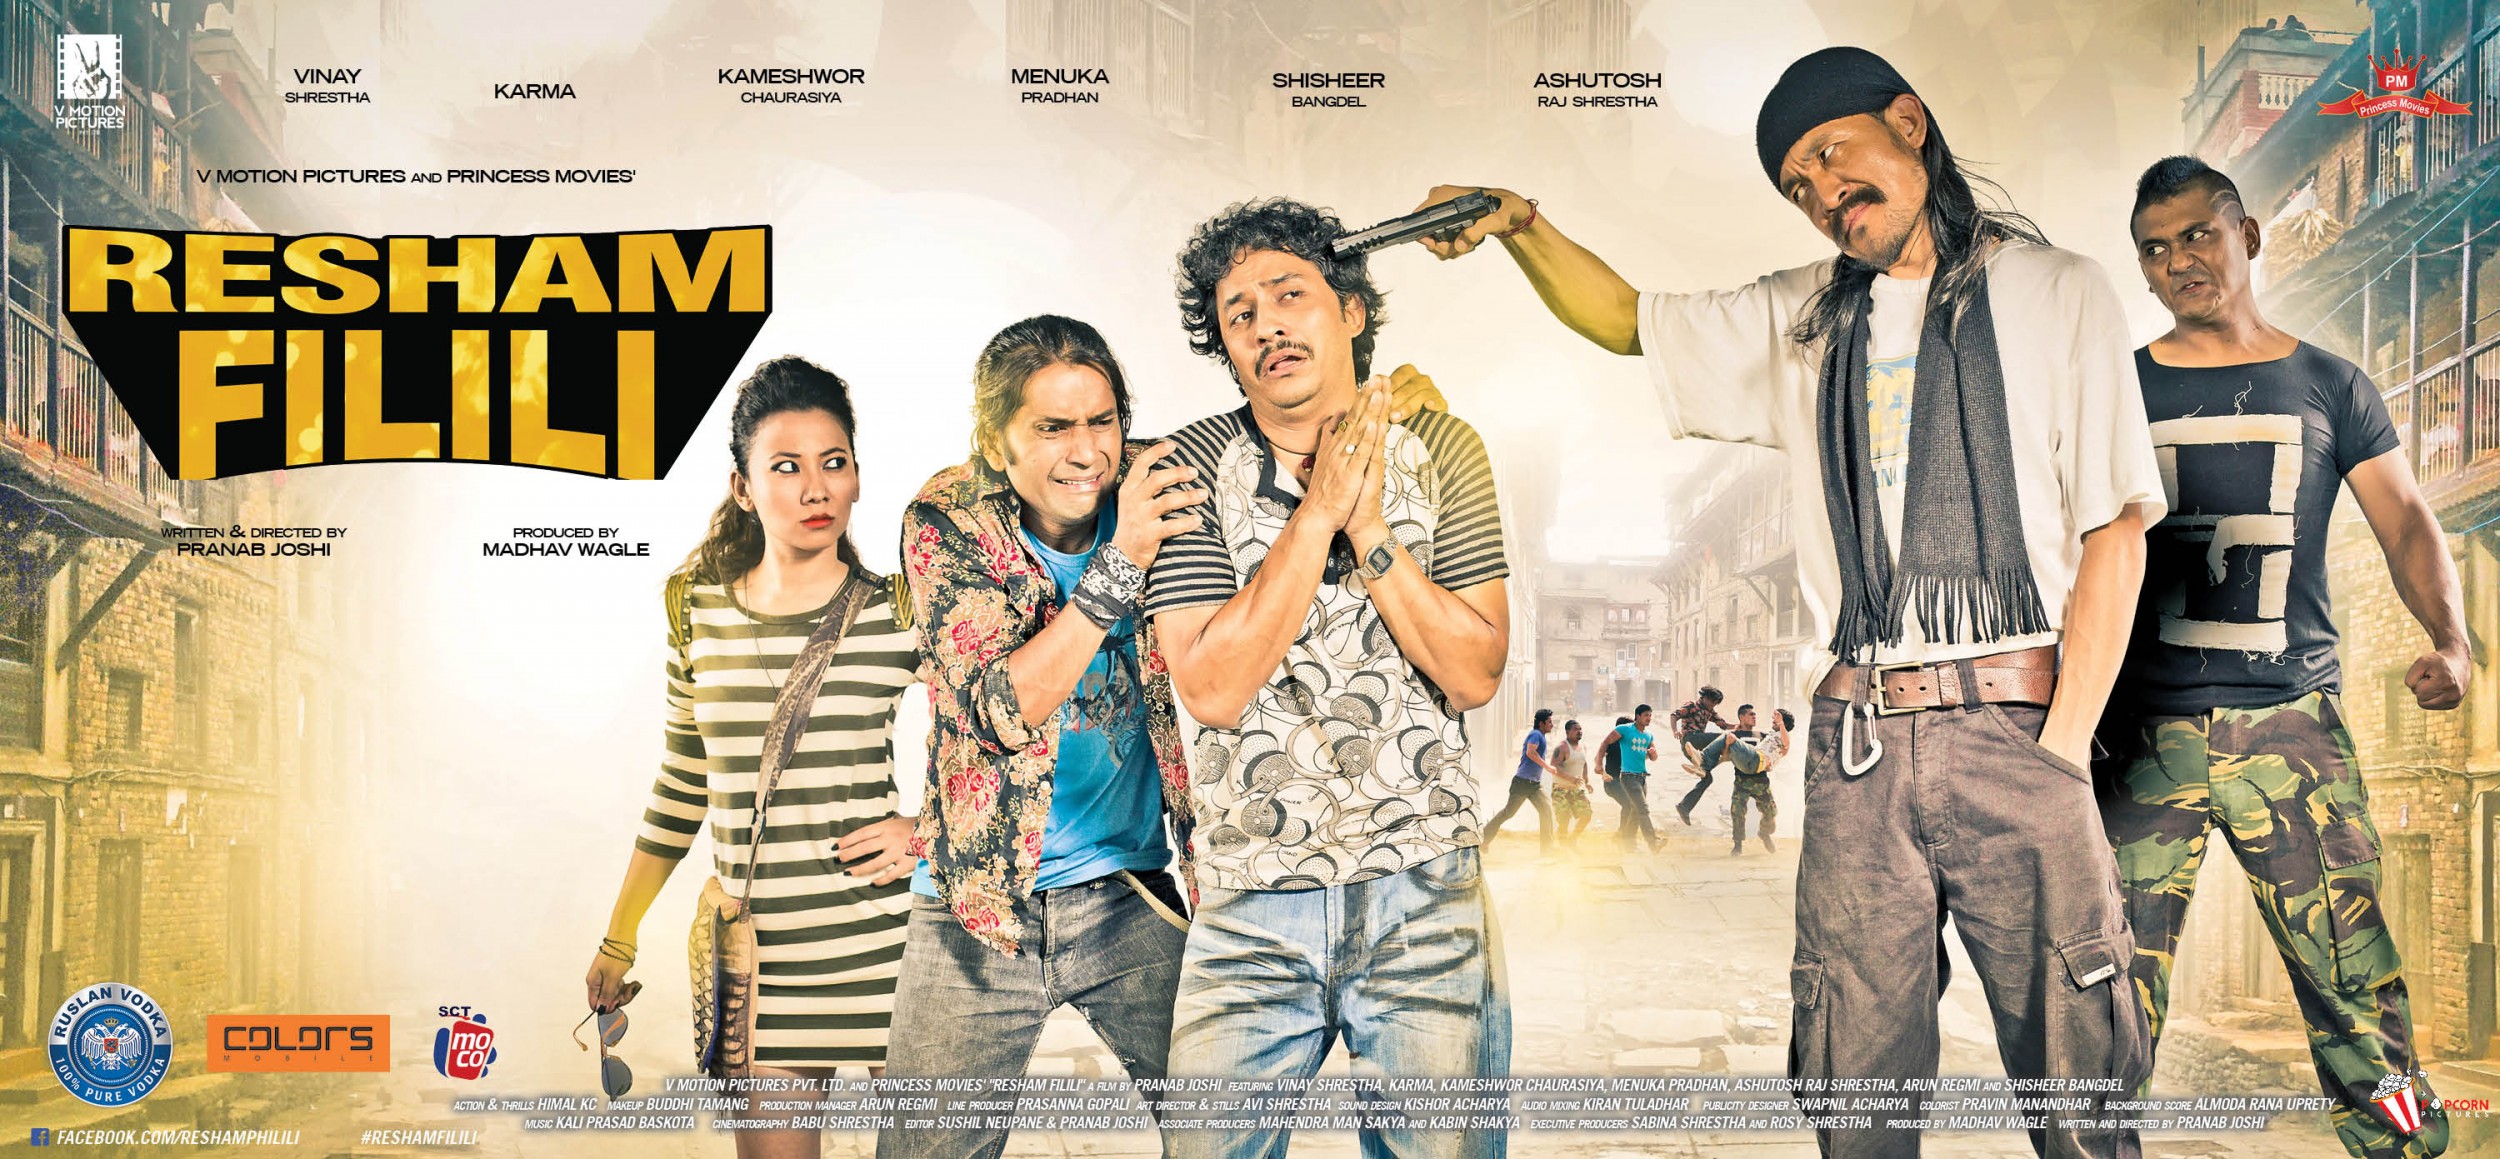 Mega Sized Movie Poster Image for Resham Filili (#8 of 11)